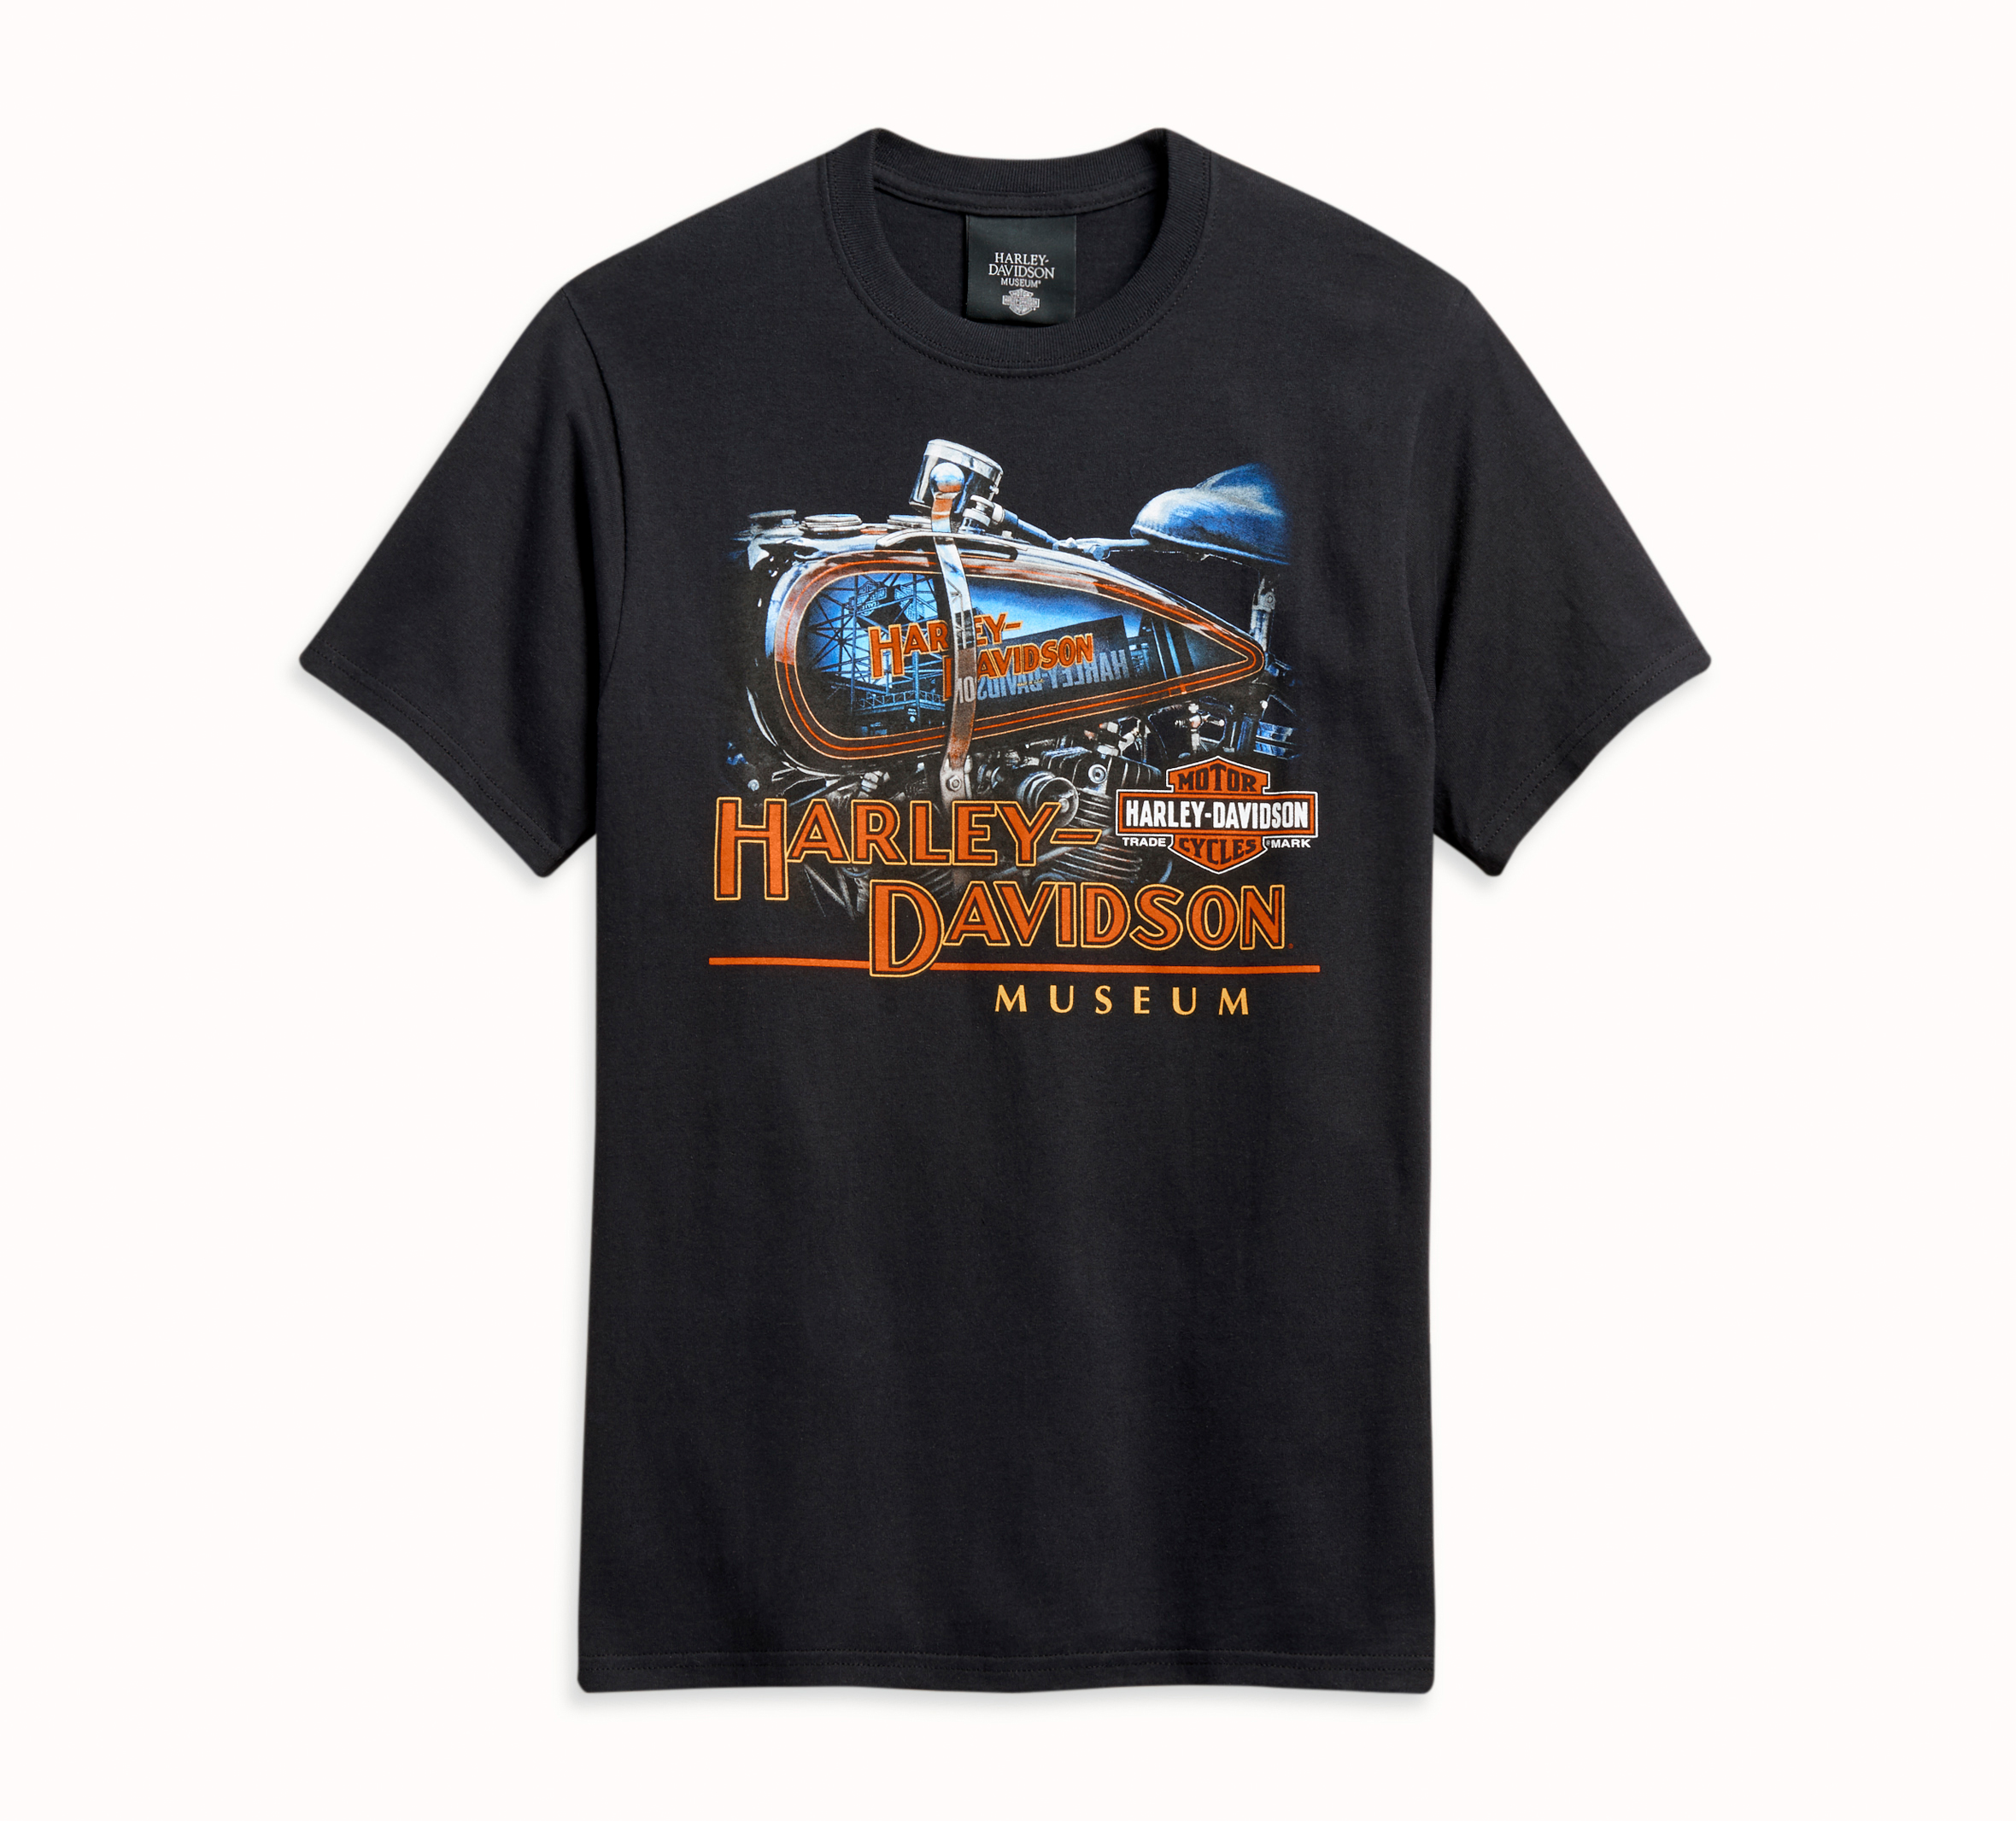 17,080円Harley Davidson tee